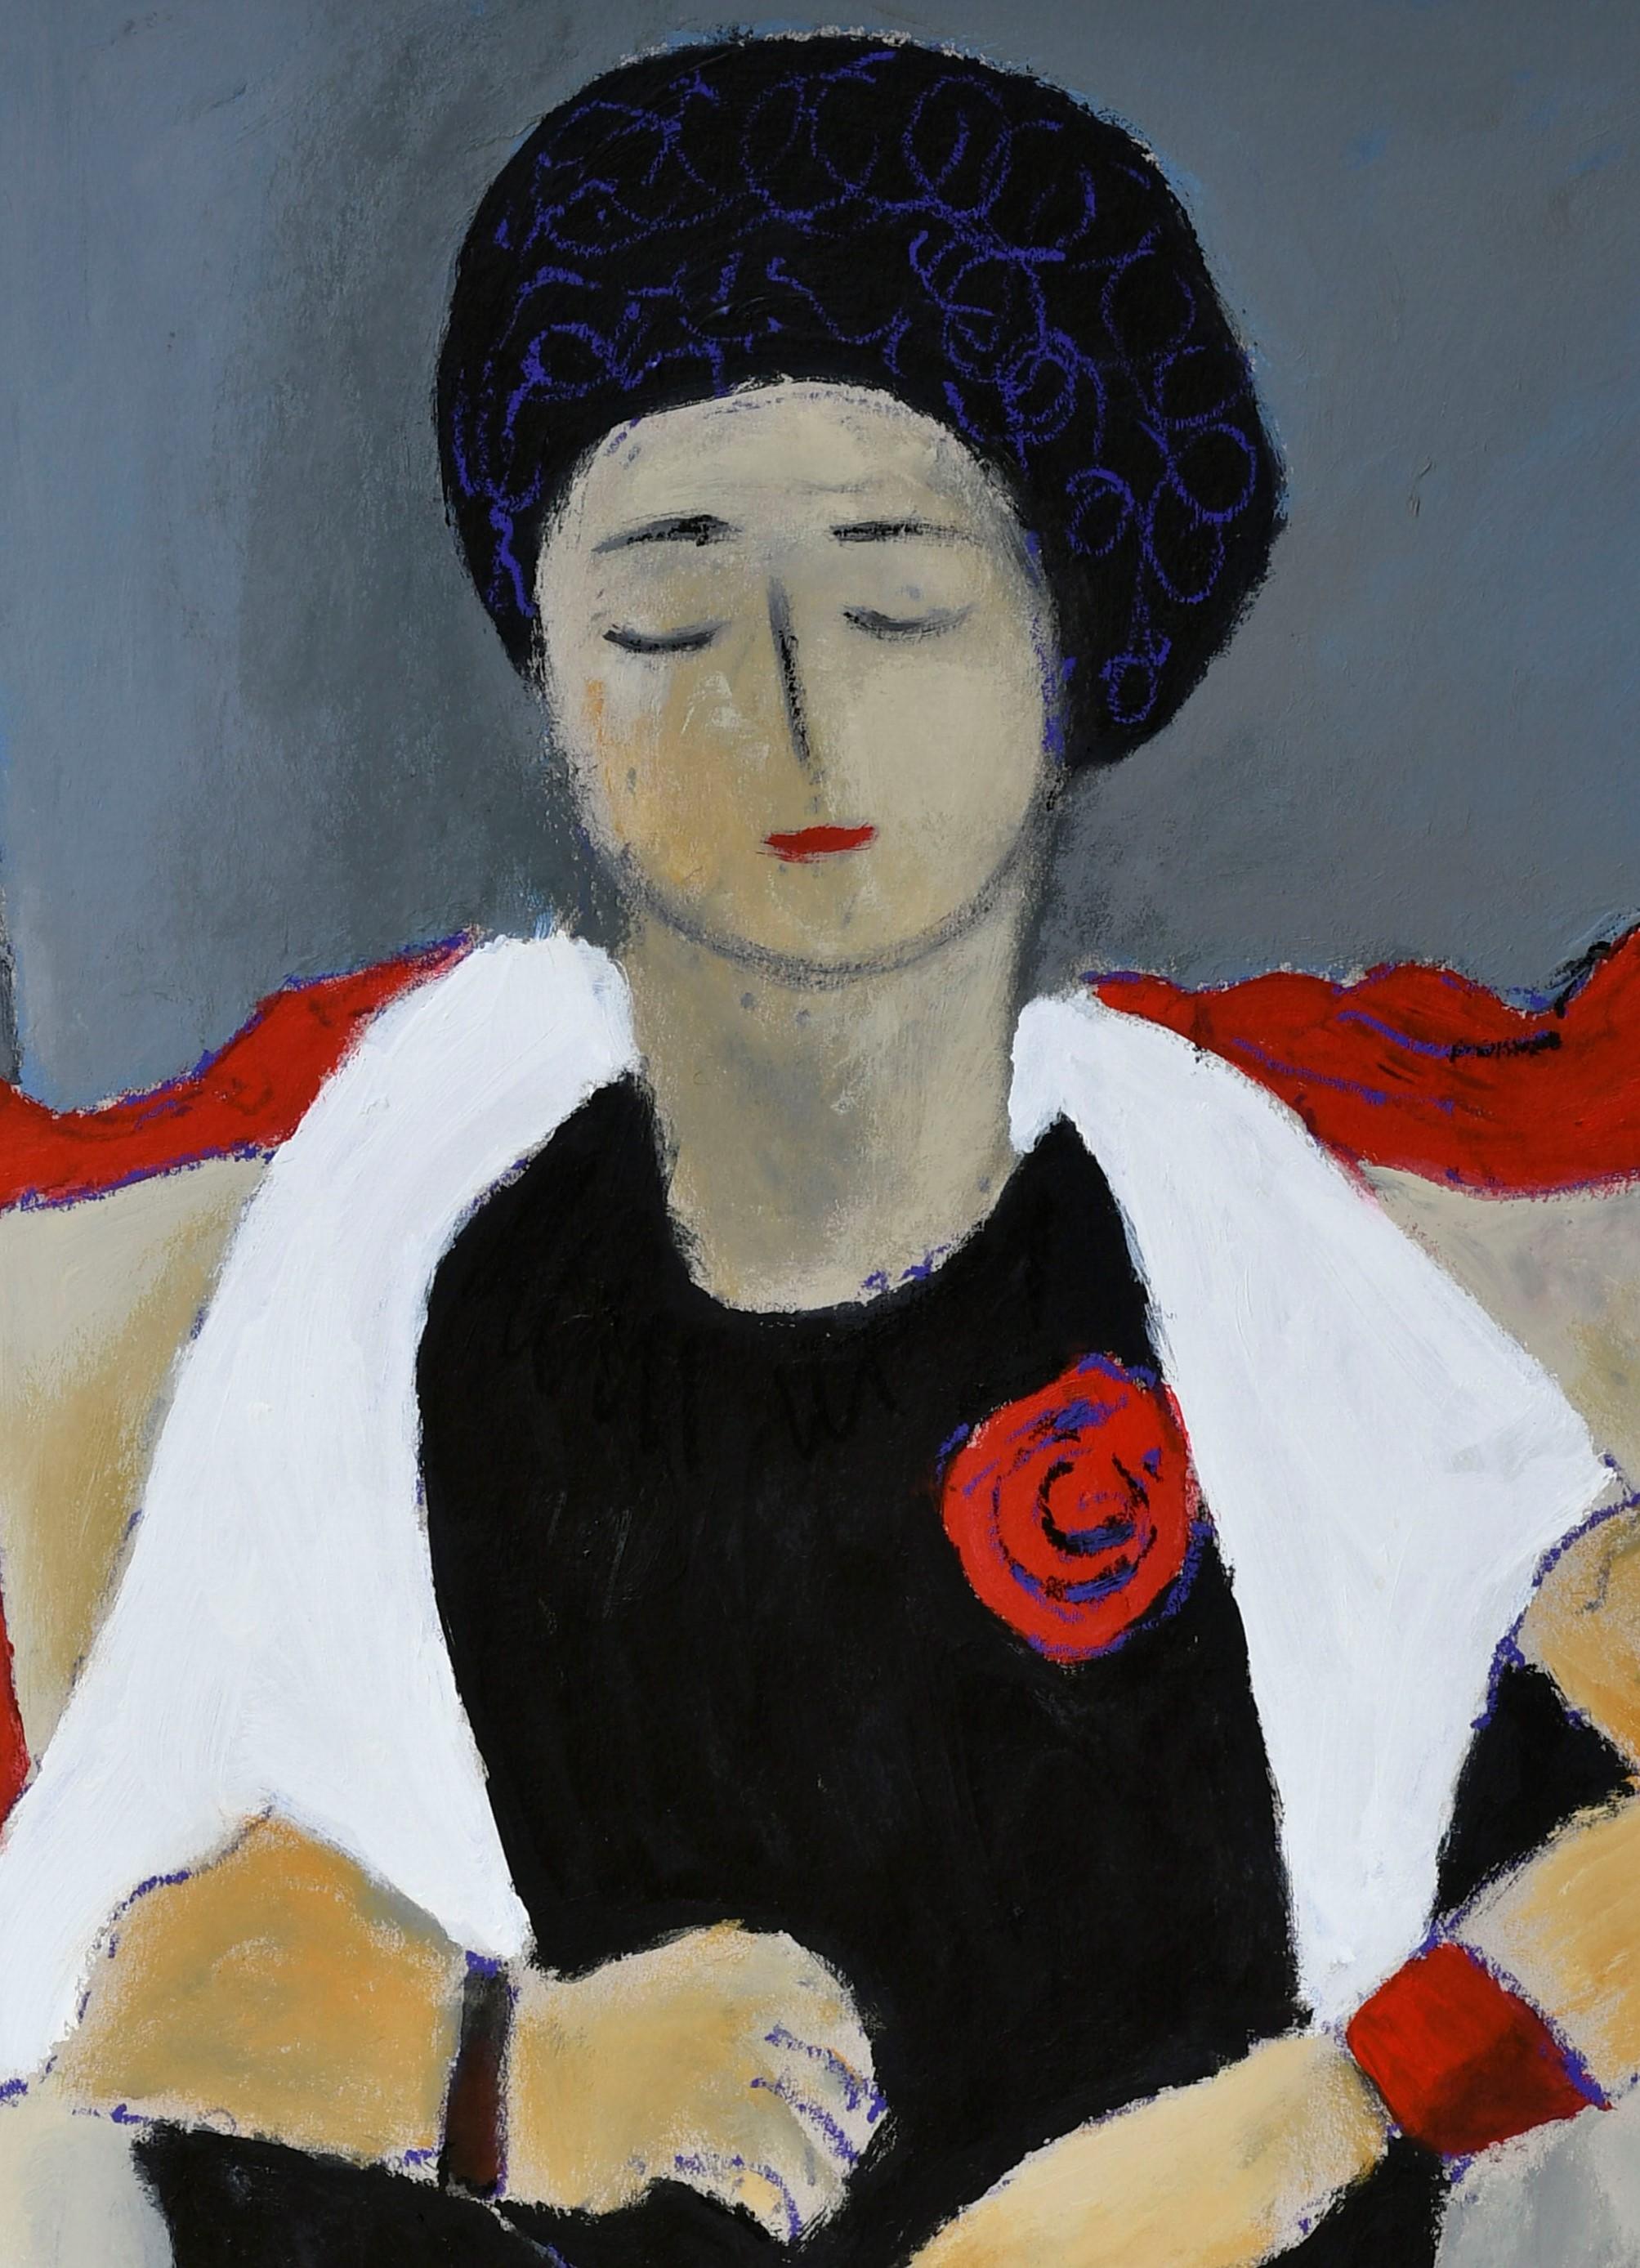 Lady mit roter Rose – Painting von Sotos Zachariadis